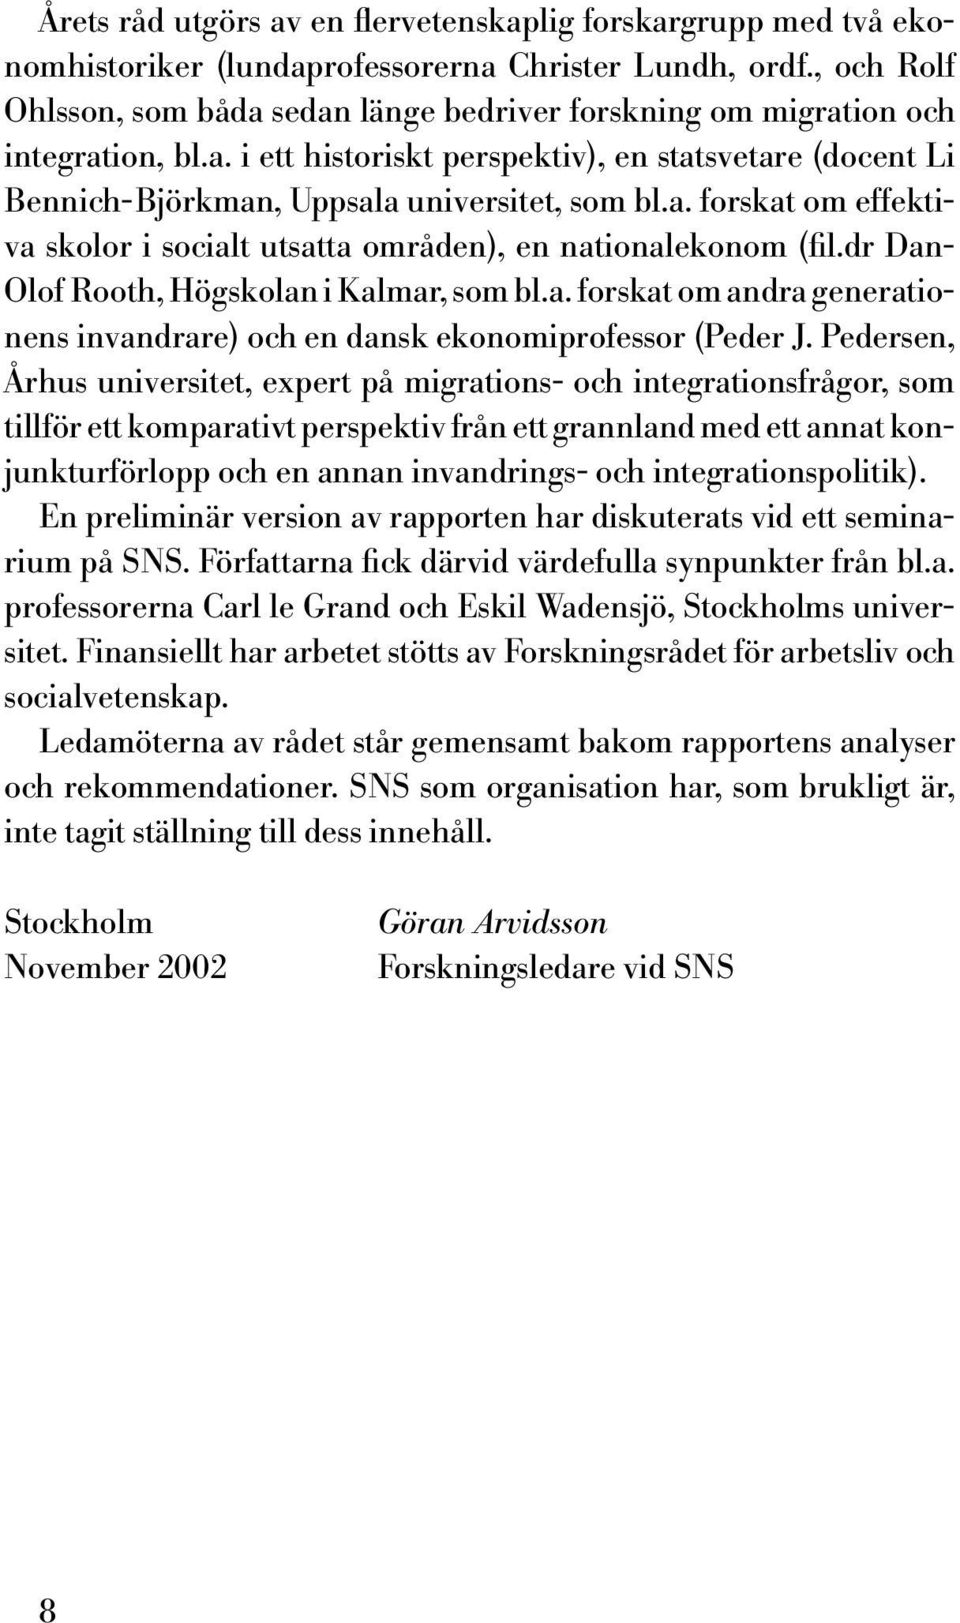 dr Dan- Olof Rooth, Högskolan i Kalmar, som bl.a. forskat om andra generationens invandrare) och en dansk ekonomiprofessor (Peder J.